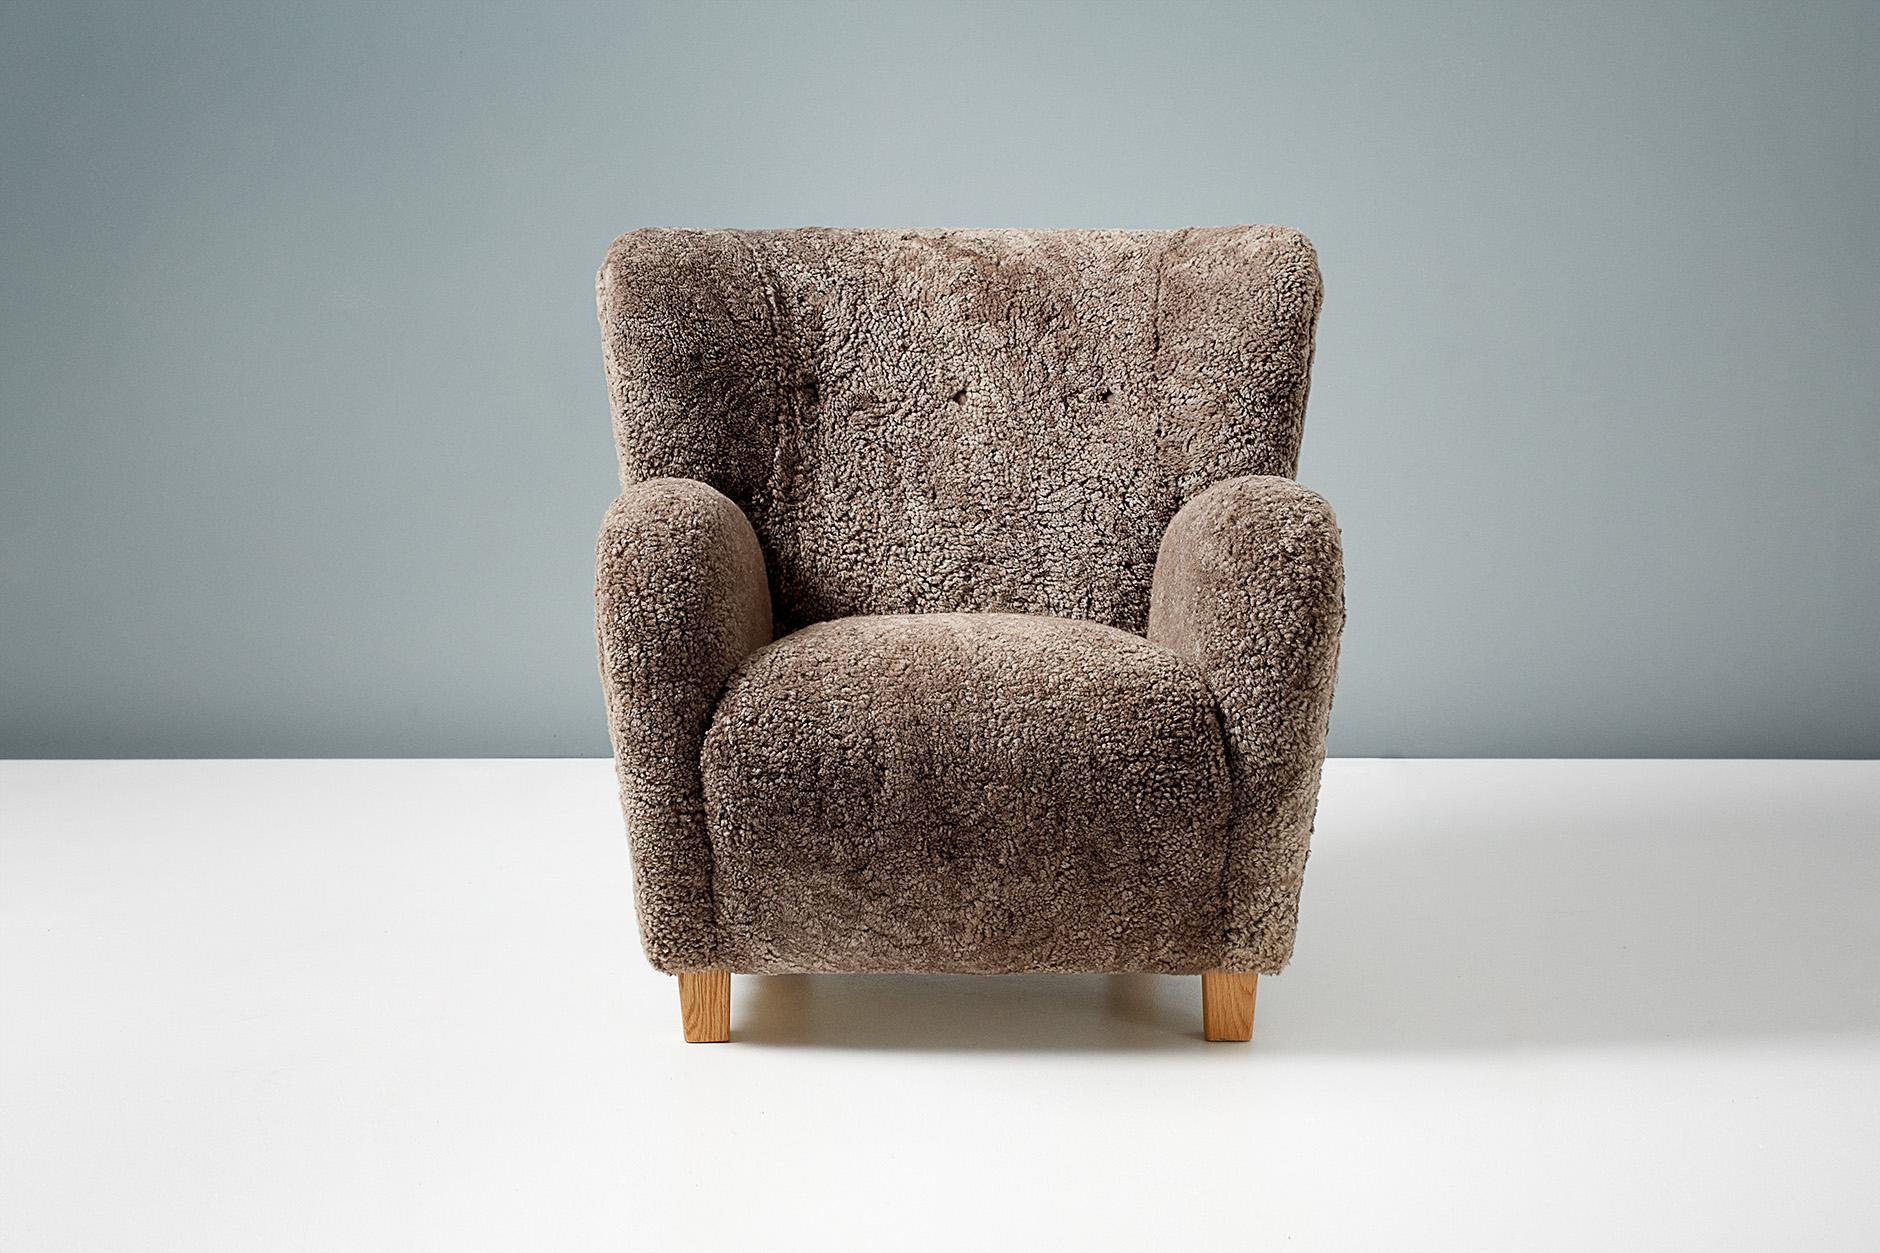 Dagmar design

Chaise longue KARU

Une chaise longue sur mesure, développée et produite dans nos ateliers de Londres, avec des matériaux de la plus haute qualité. Cet exemple est garni de shearling australien brun 